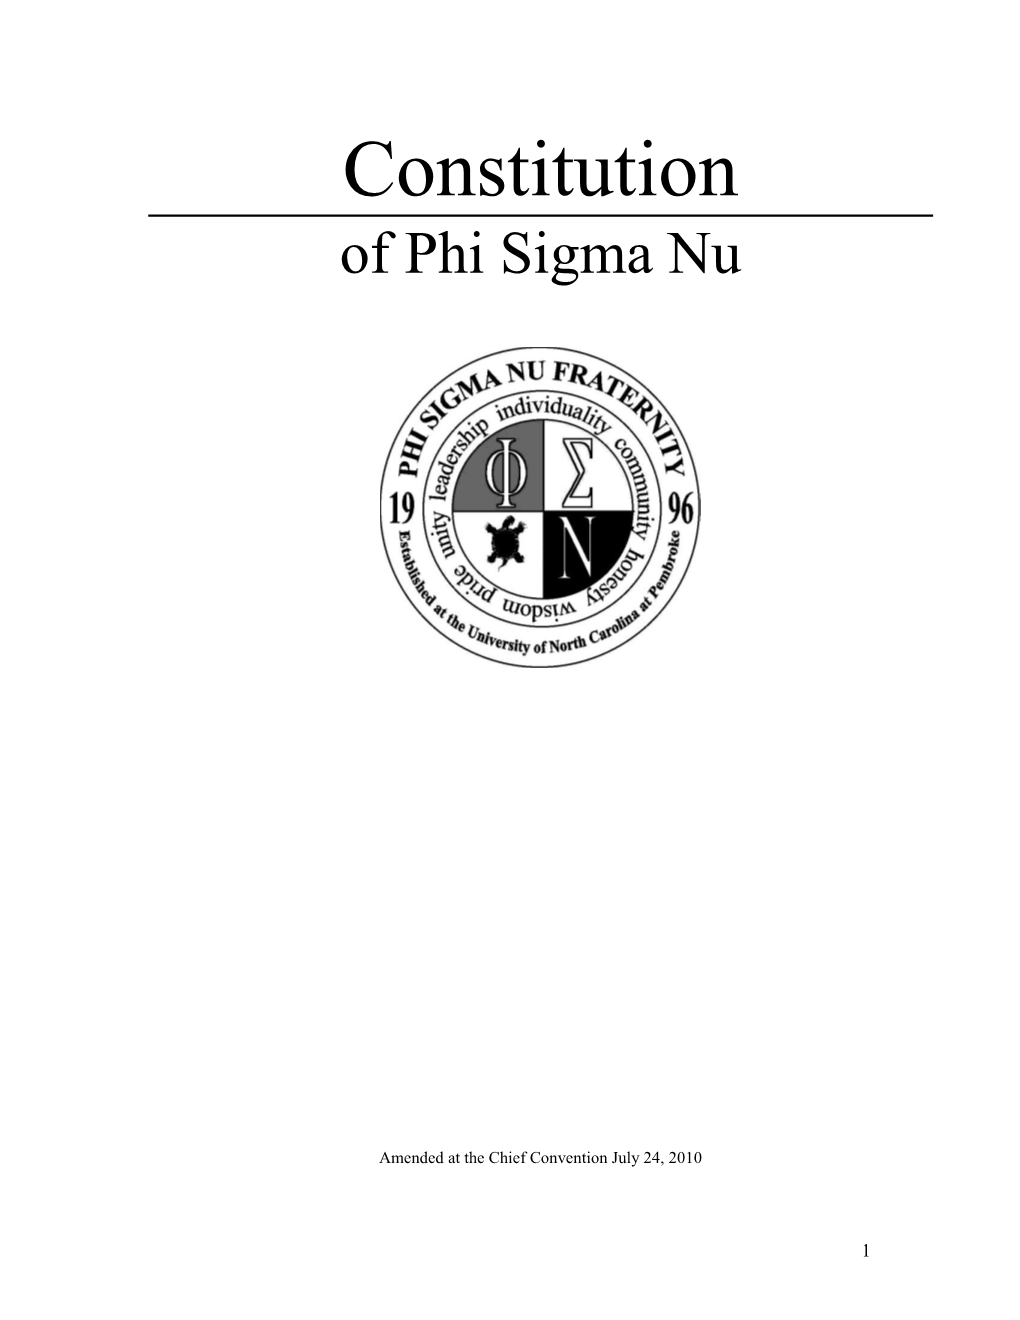 Constitution of Phi Sigma Nu